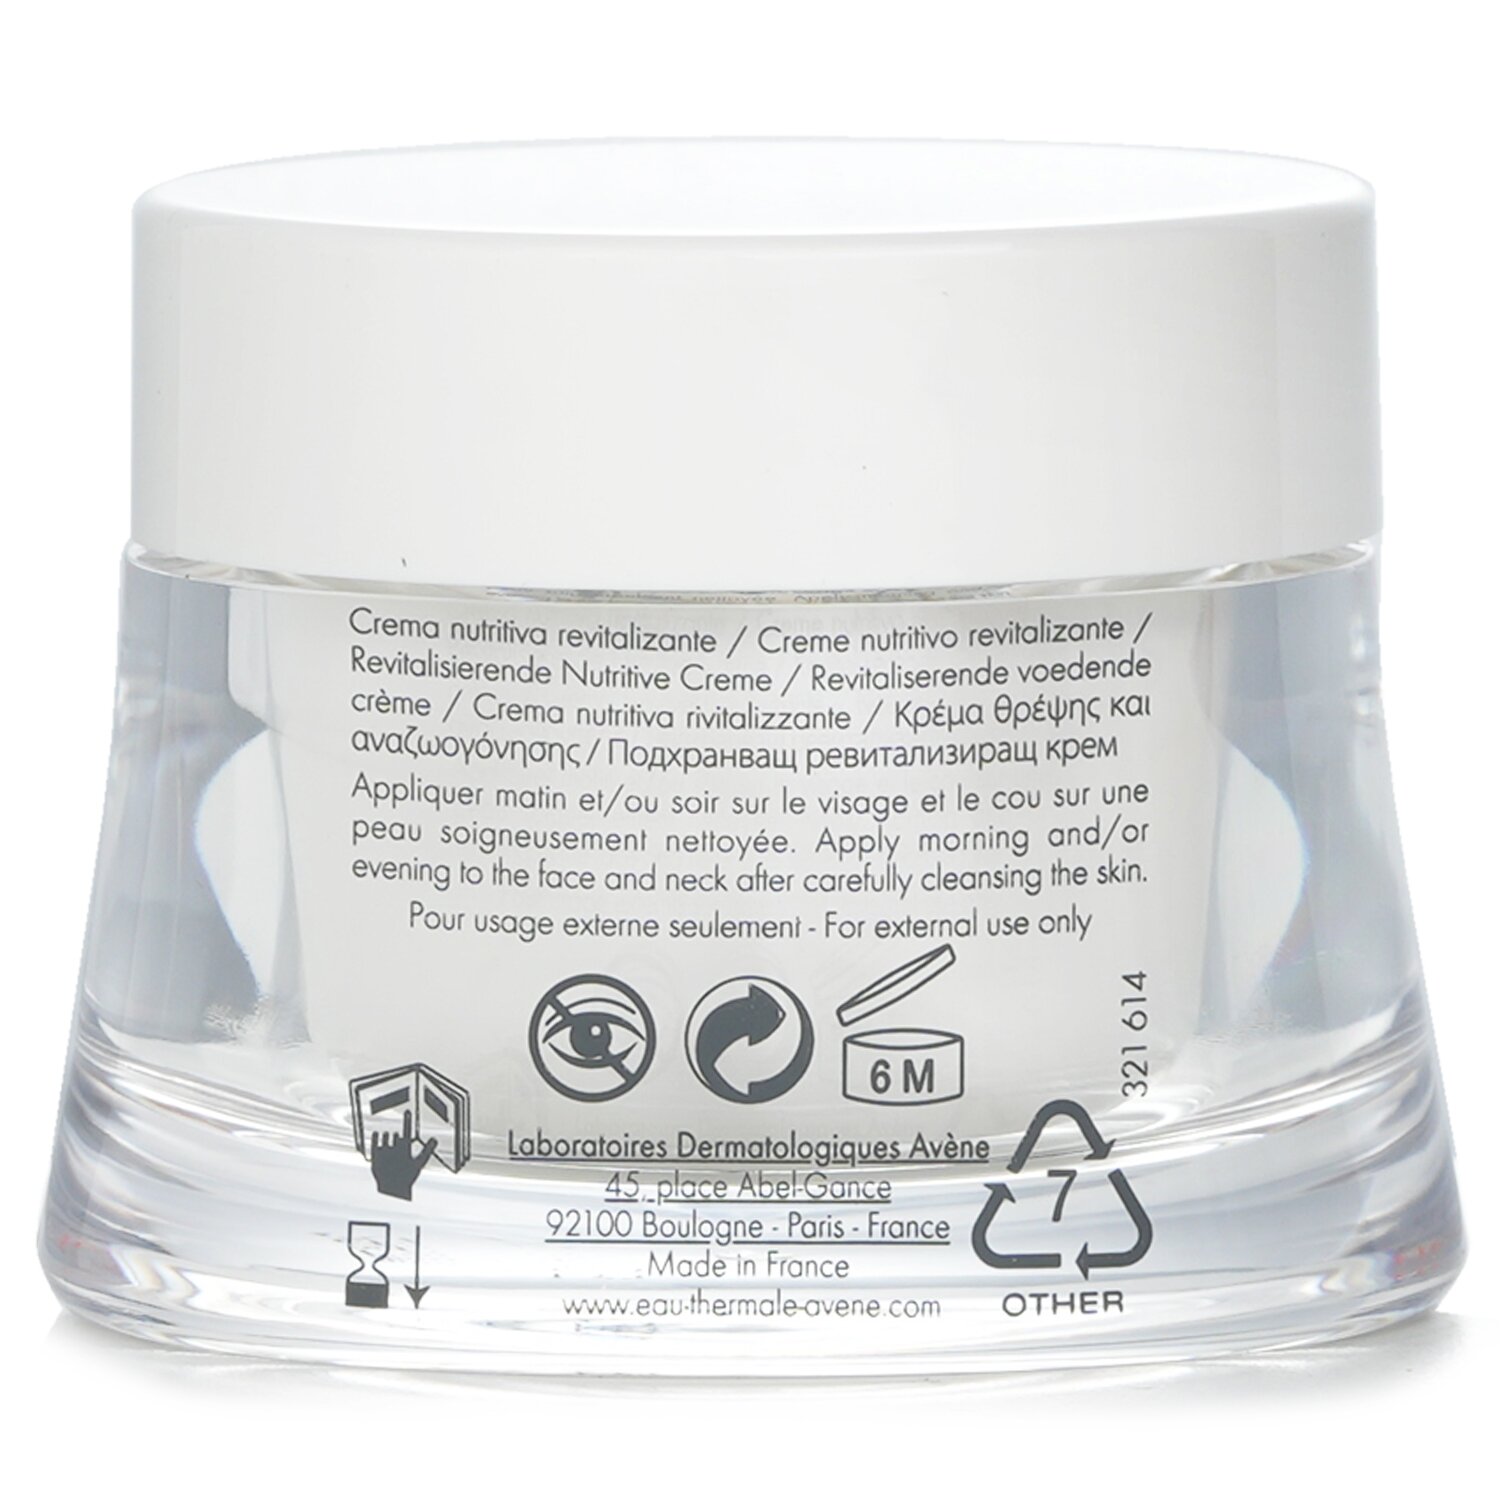 Avene Revitalizing Nourishing Cream - For Dry Sensitive Skin 50ml/1.6oz